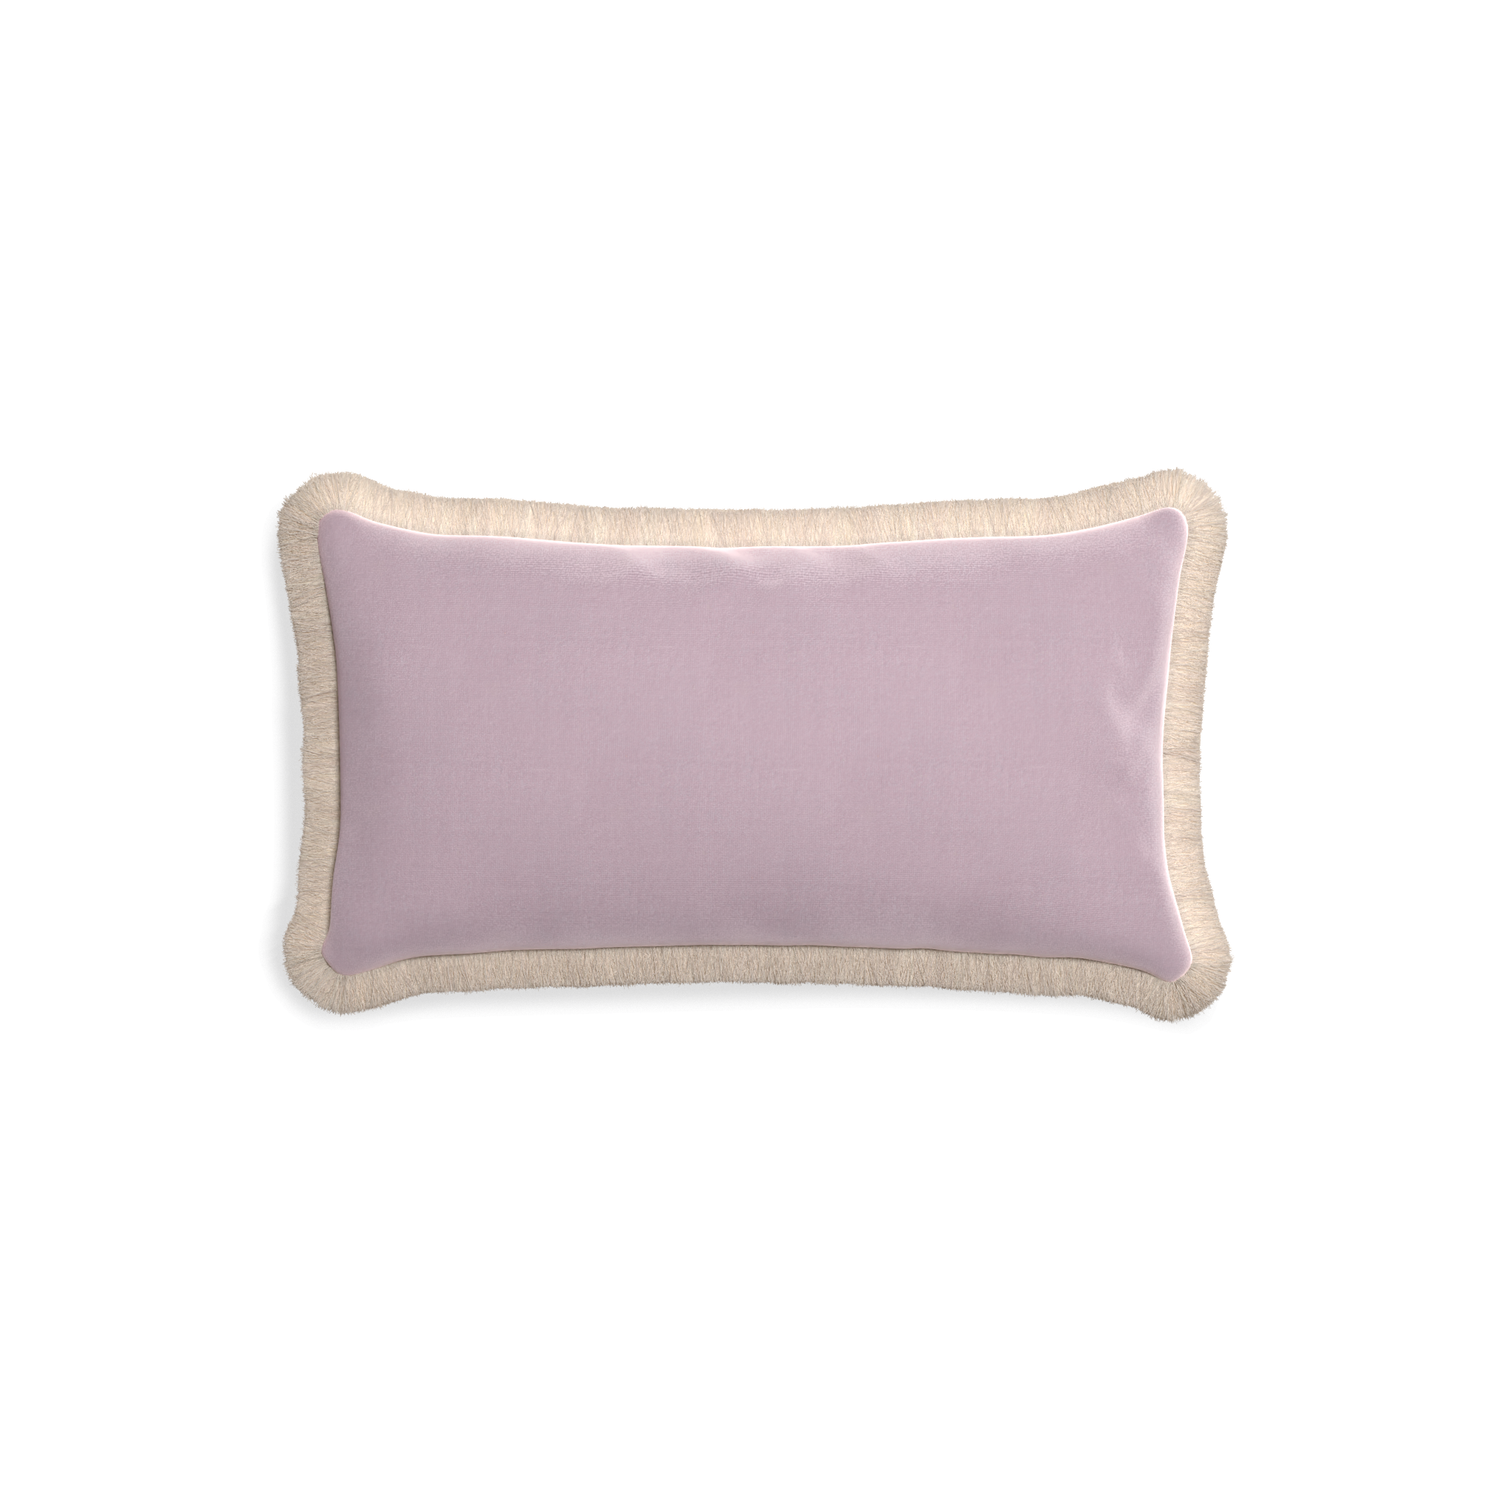 rectangle lilac velvet pillow with cream fringe